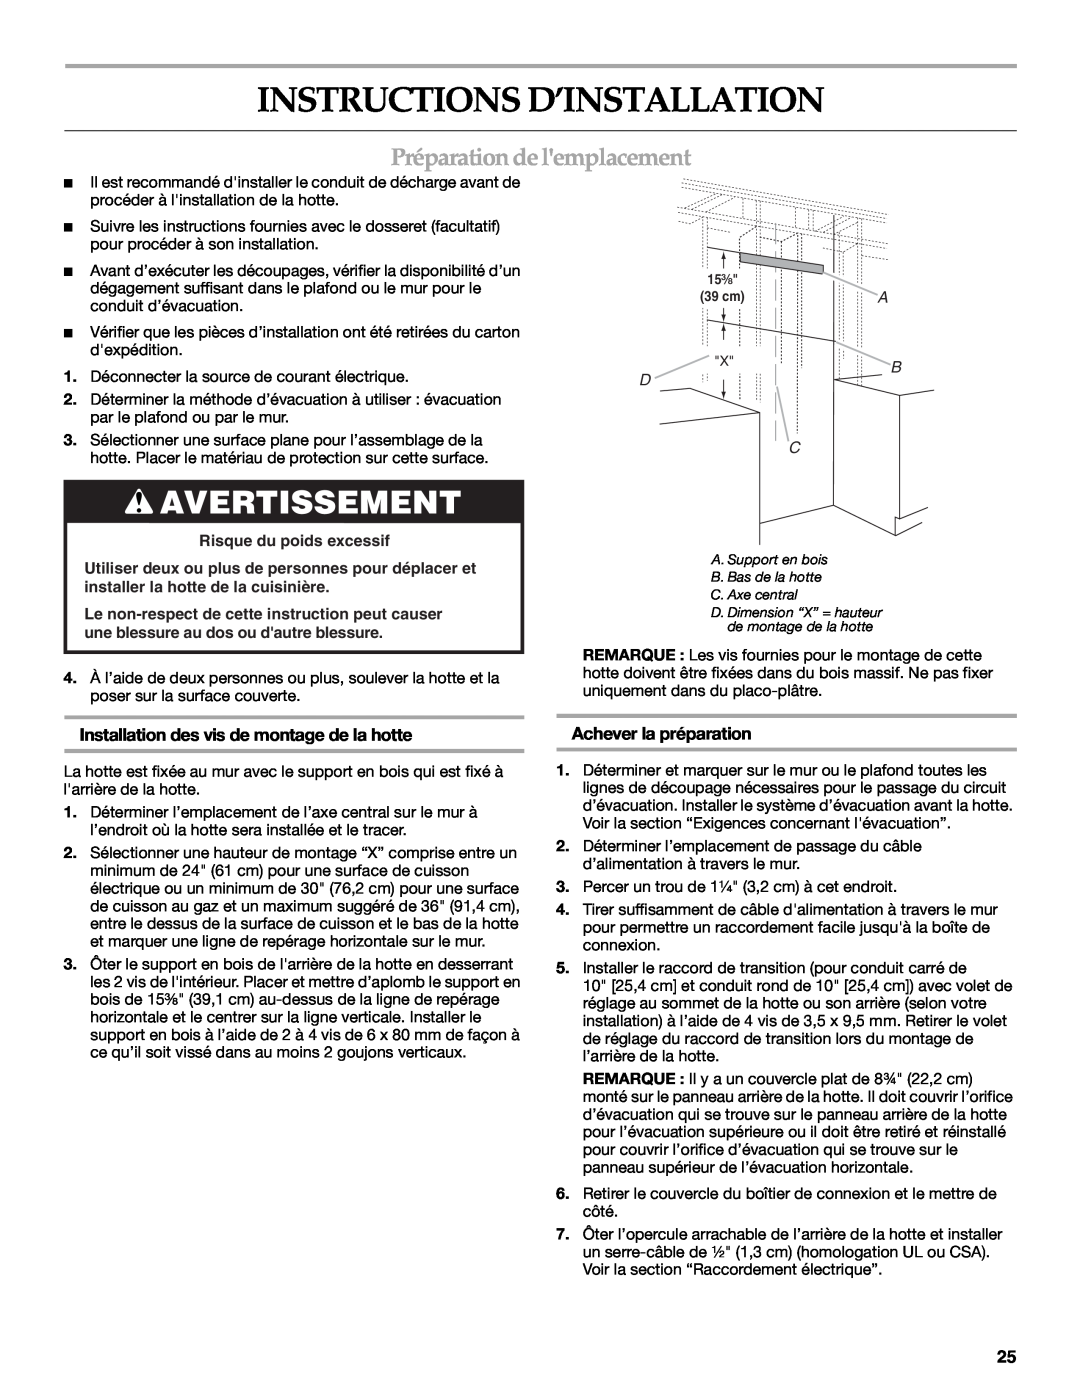 KitchenAid W10331007B Instructions D’Installation, Avertissement, Préparationdelemplacement, Achever la préparation 